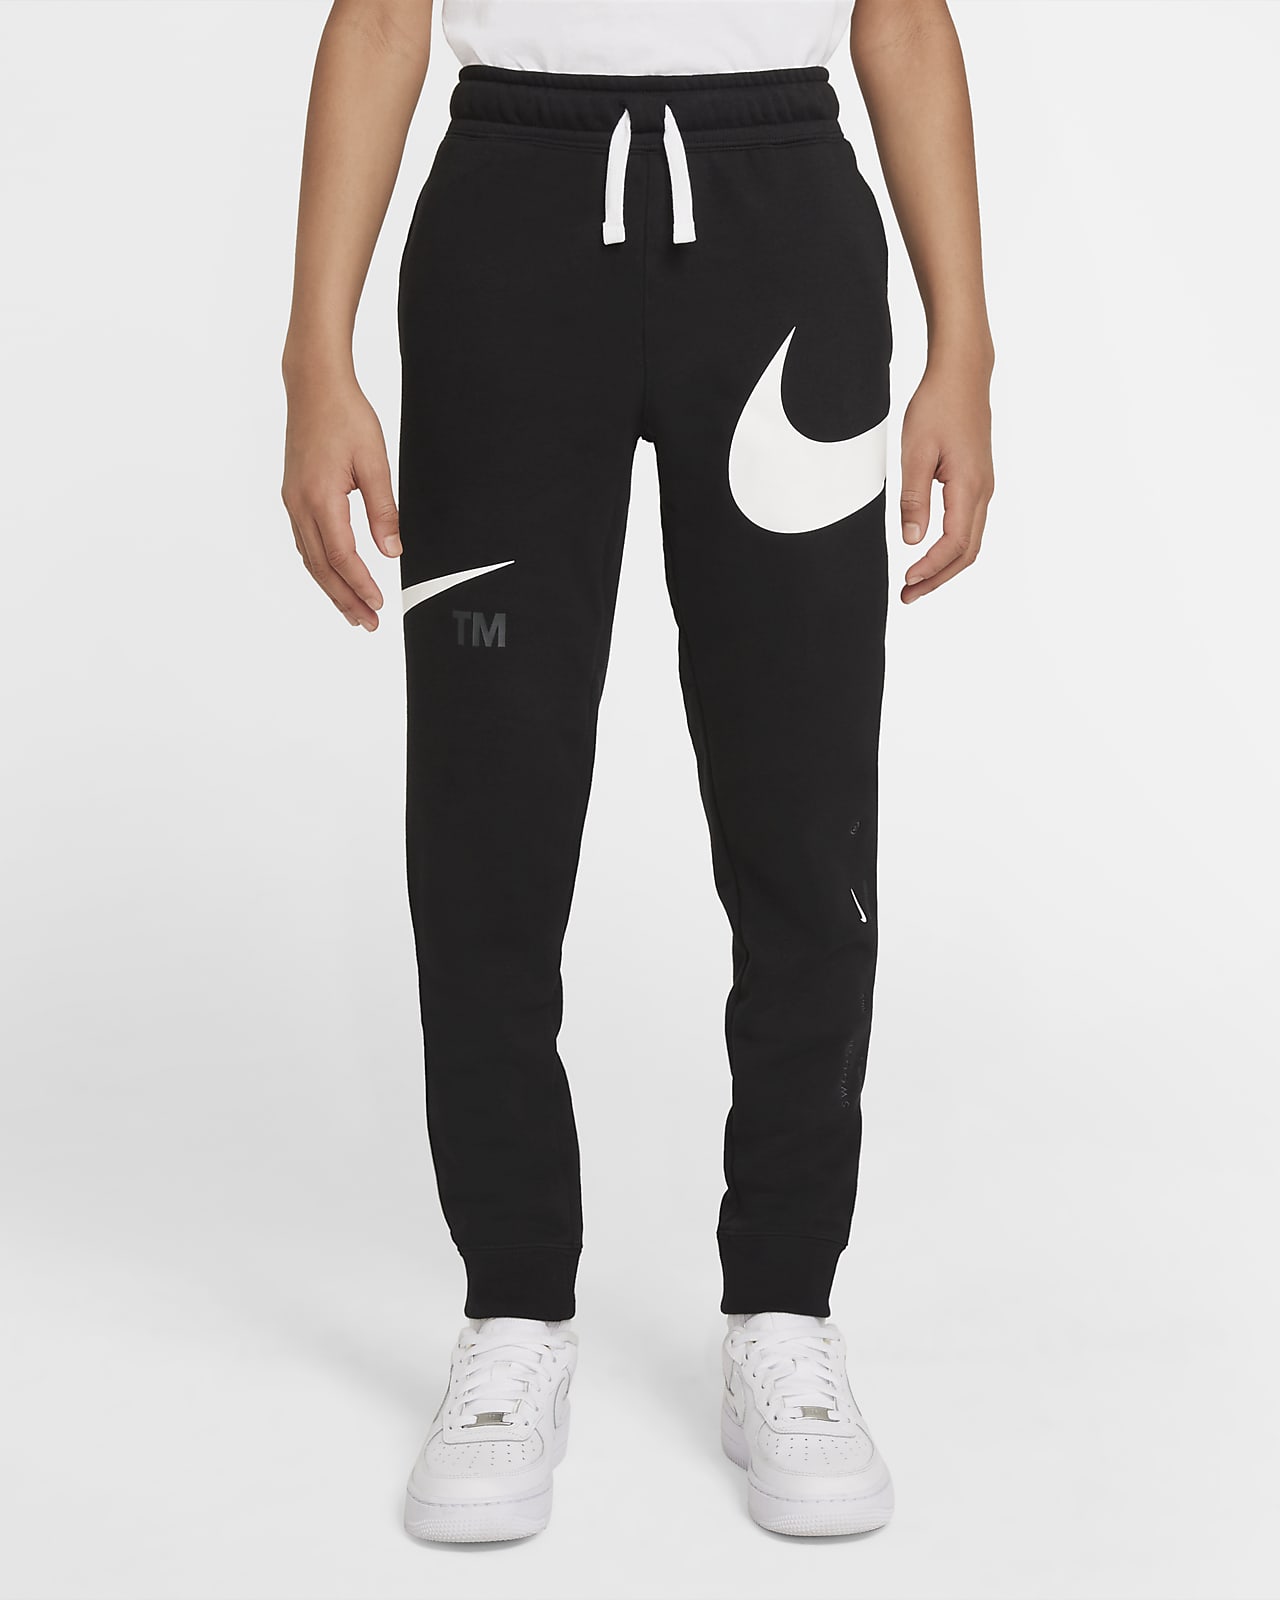 Nike Sportswear Swoosh Older Kids' (Boys') Fleece Trousers